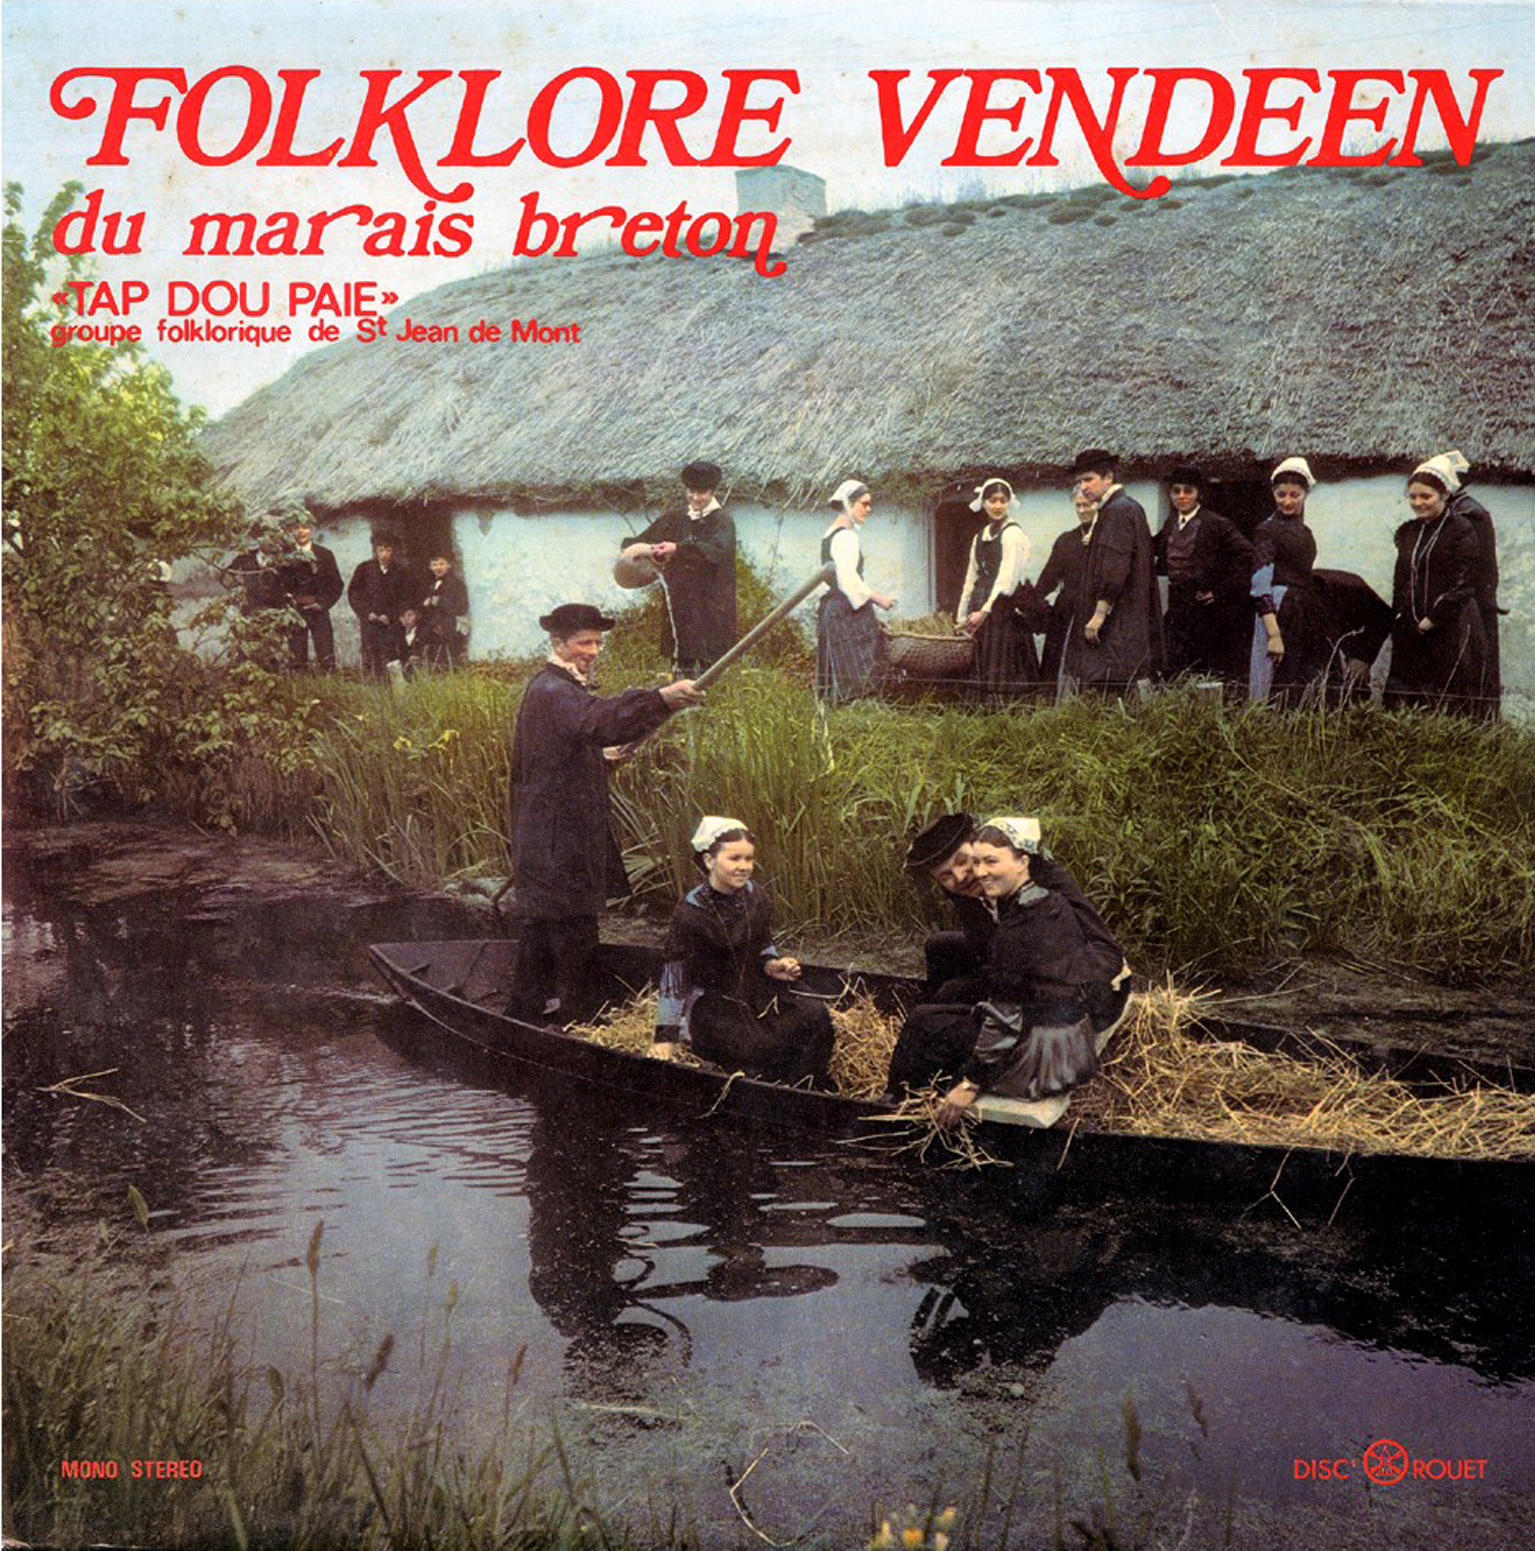 Folklore vendéen du Marais Breton Tap Dou Païe, groupe folklorique de Saint-Jean-de-Monts